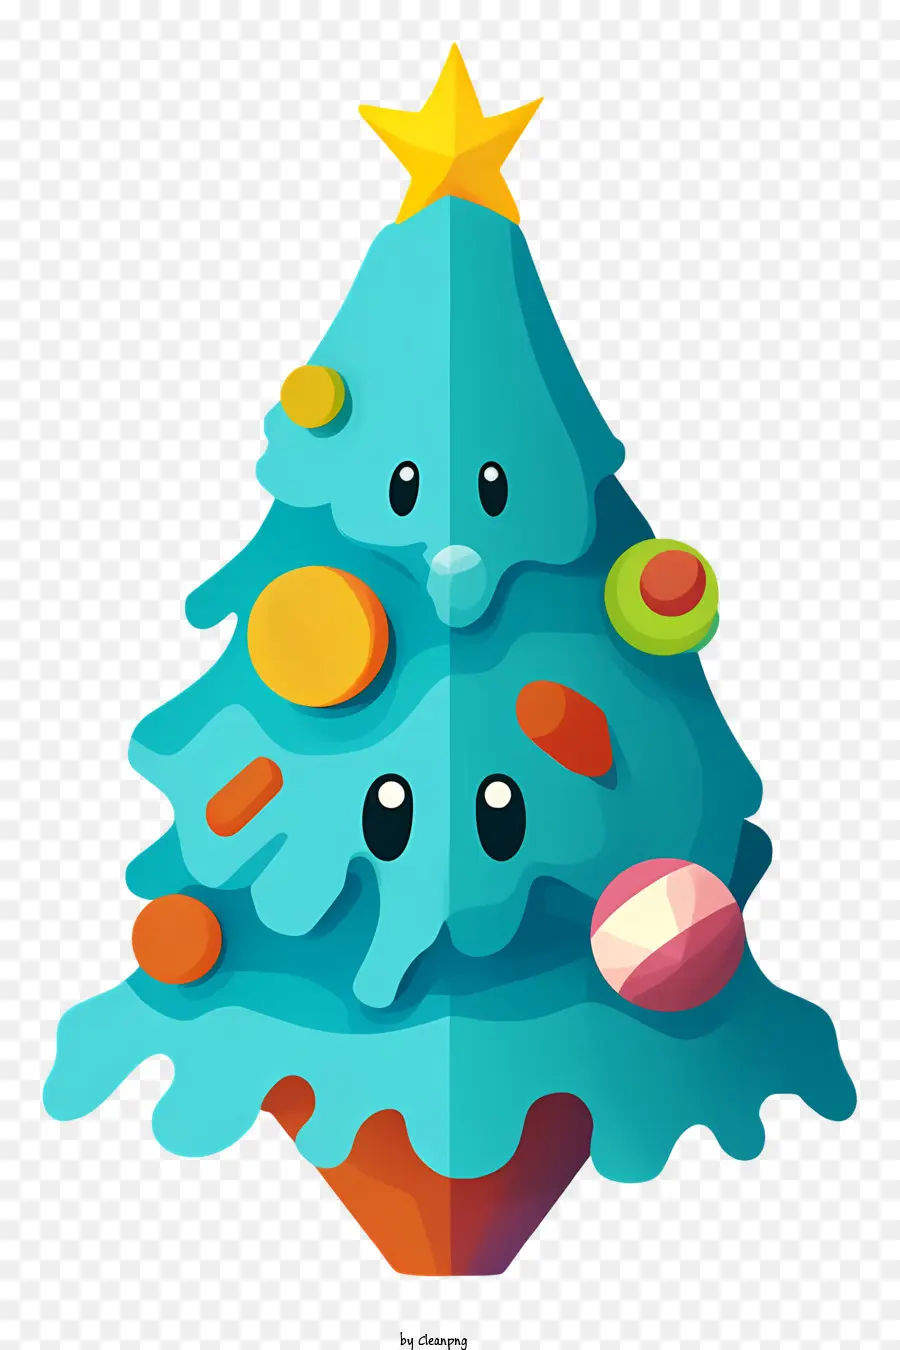 Weihnachtsbaum - Festlicher Weihnachtsbaum mit glücklichem Gesicht und Ornamenten